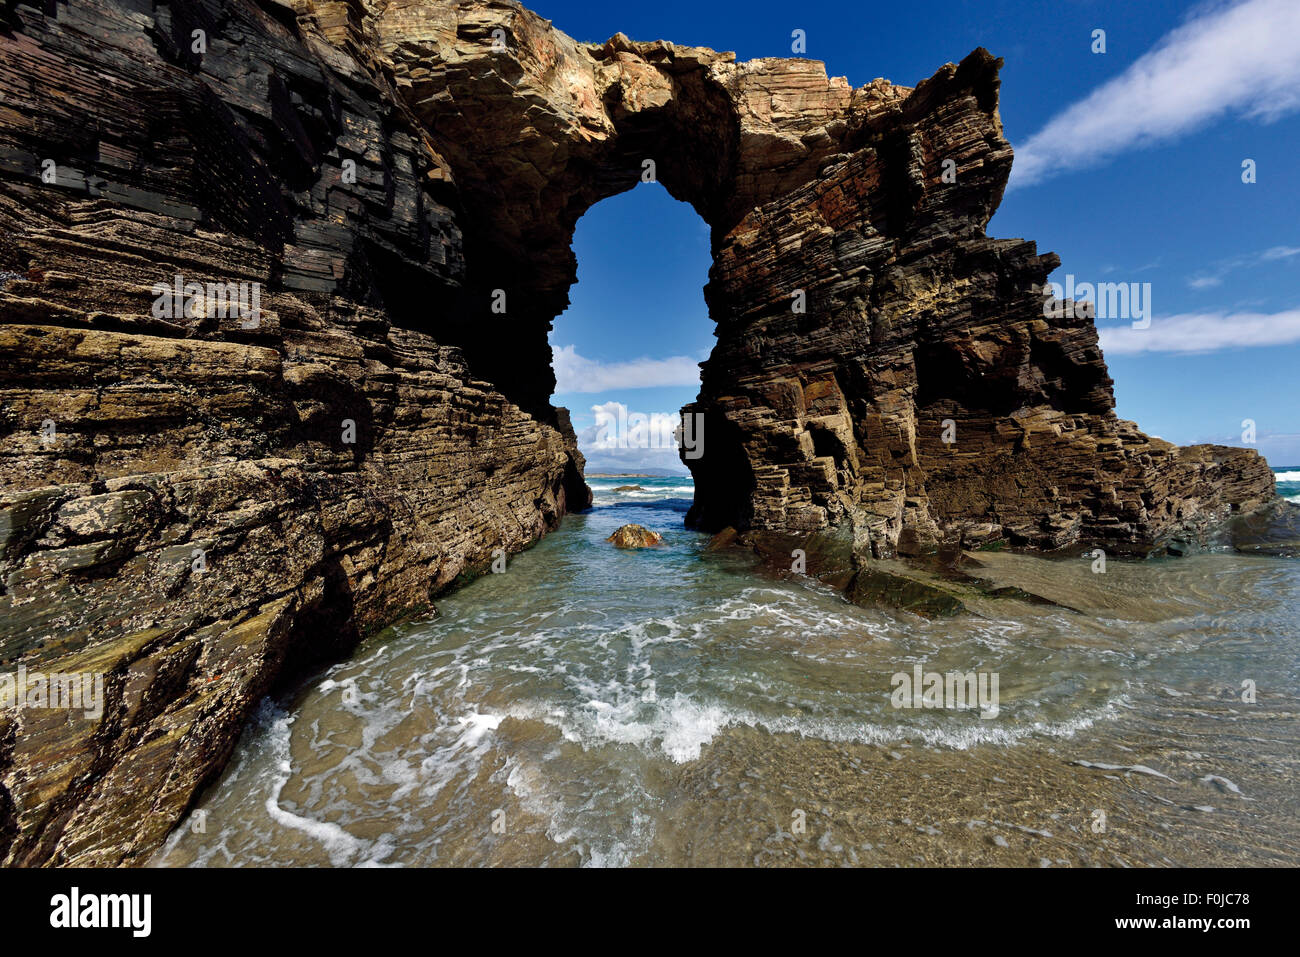 España, Galicia: vista panorámica de la Catedral de roca en la playa de arcade Foto de stock